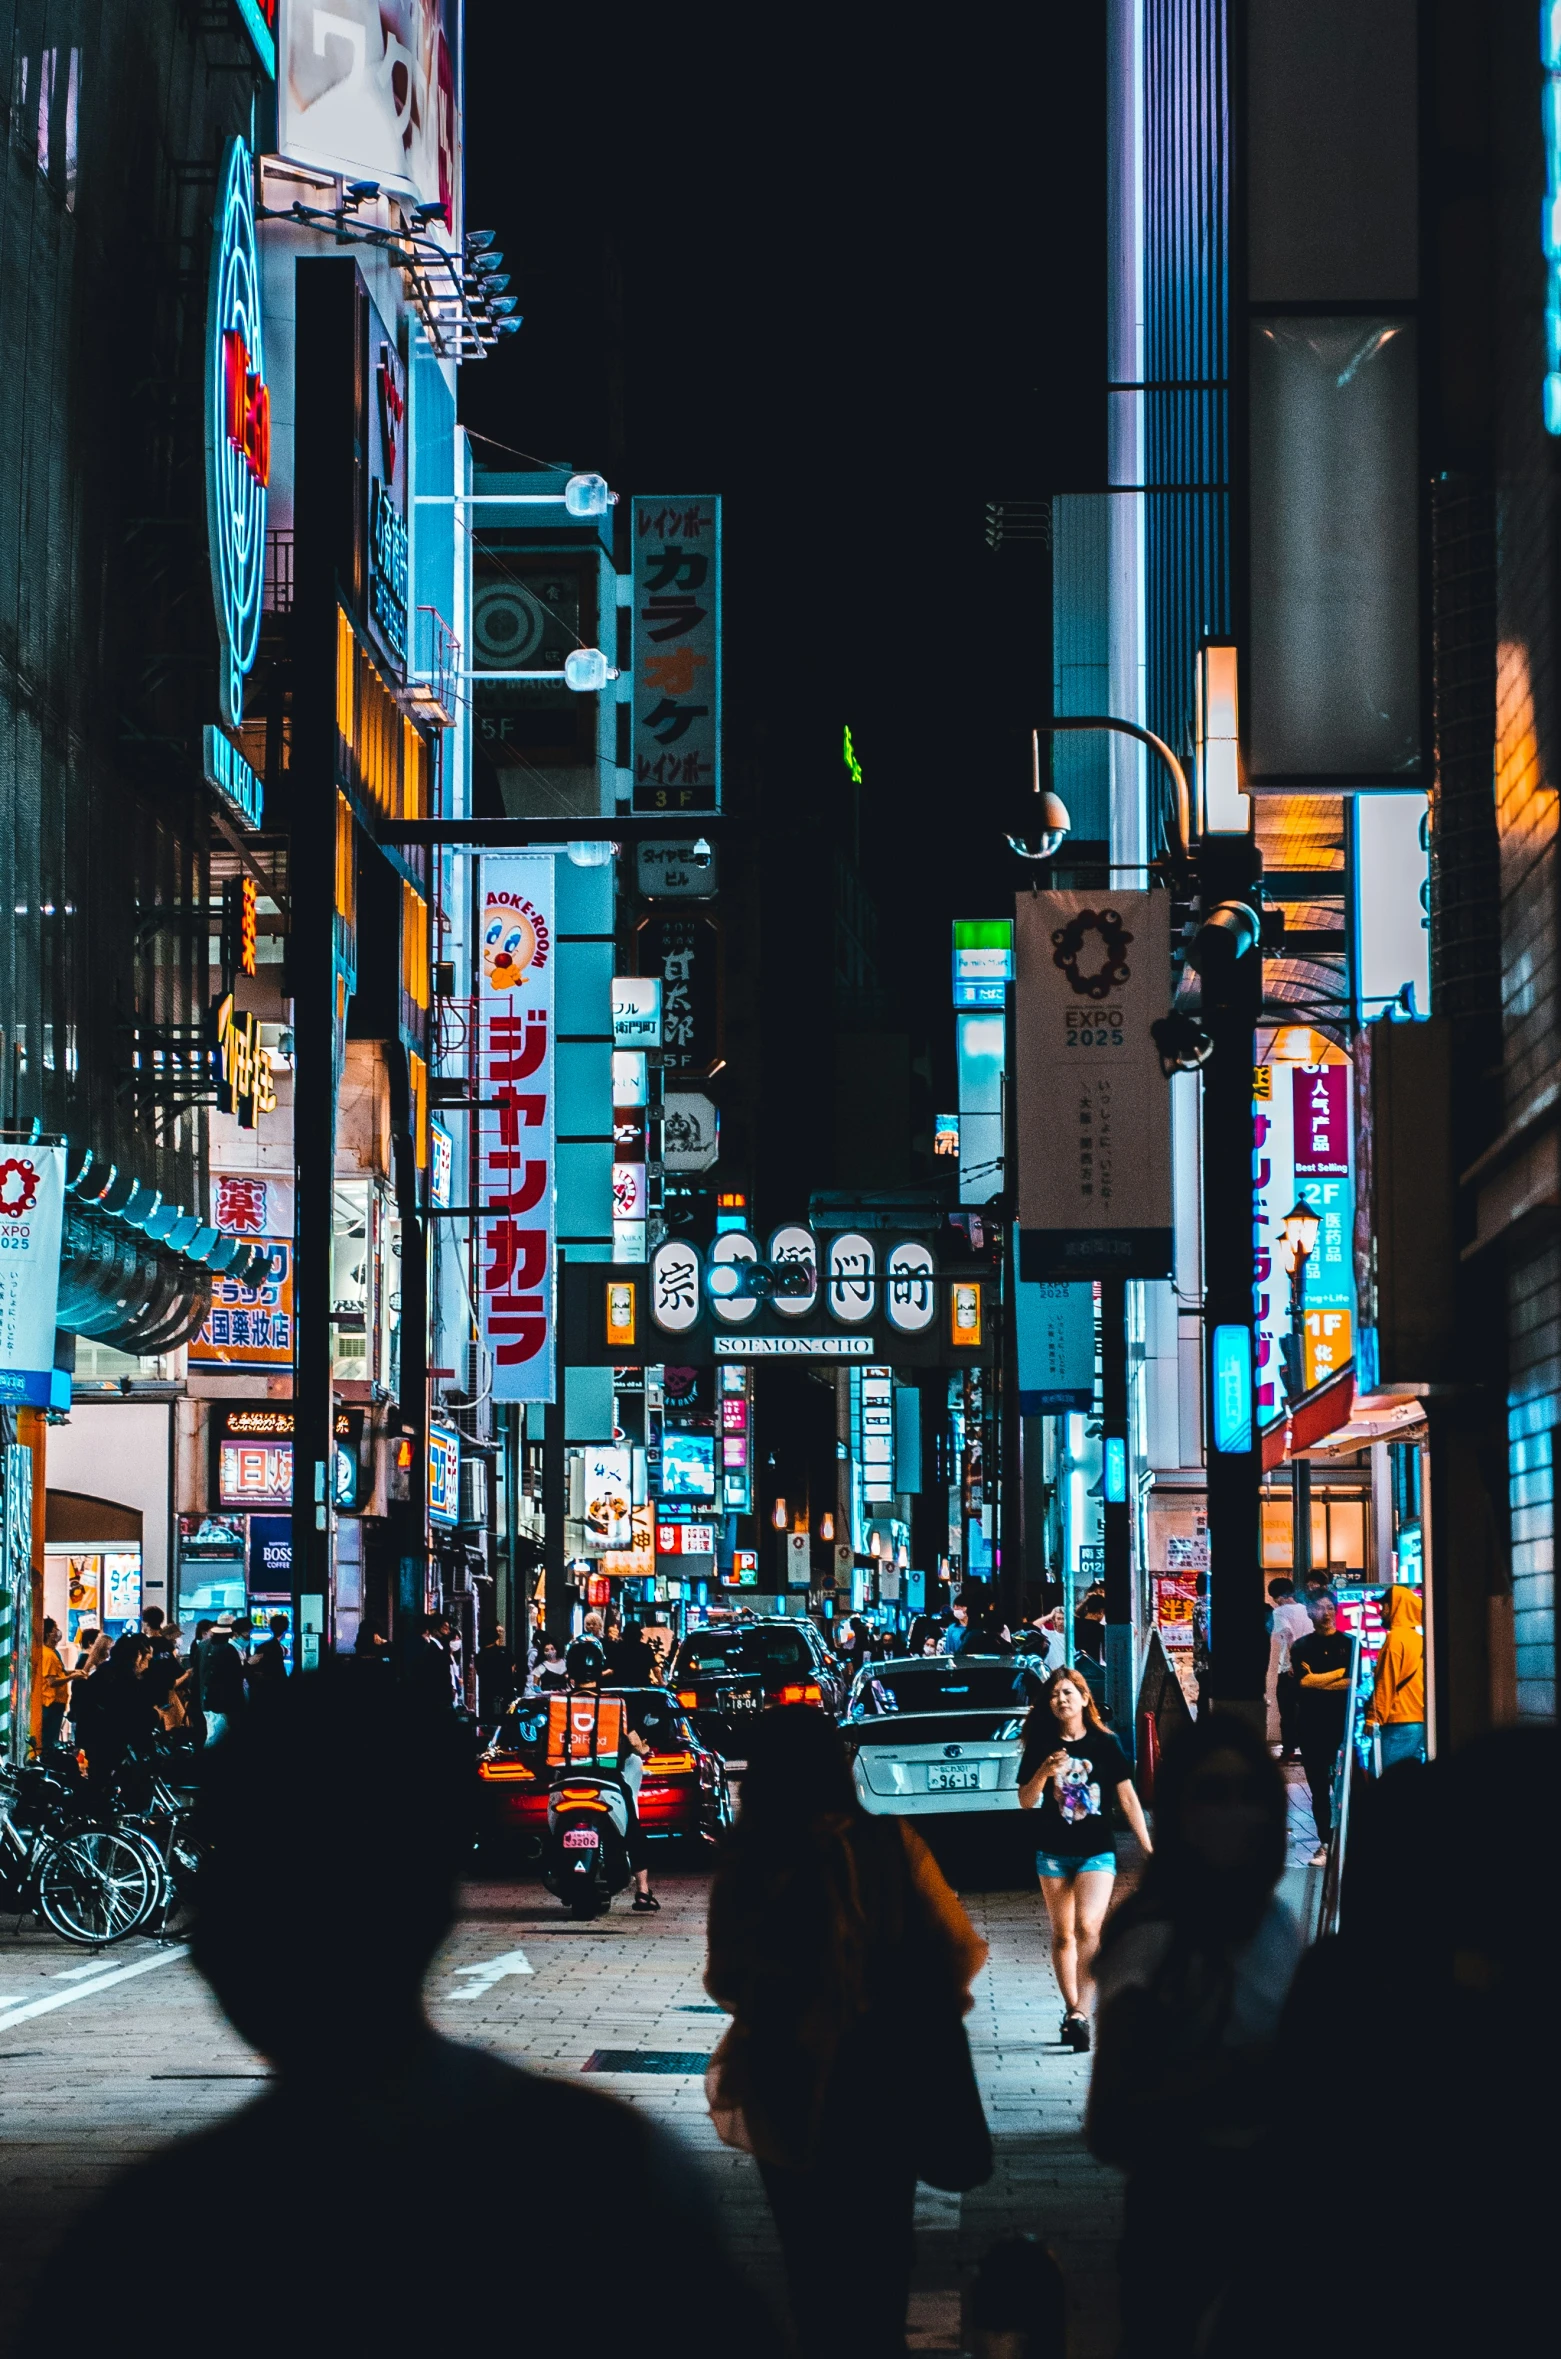 pedestrians walk down a city street at night